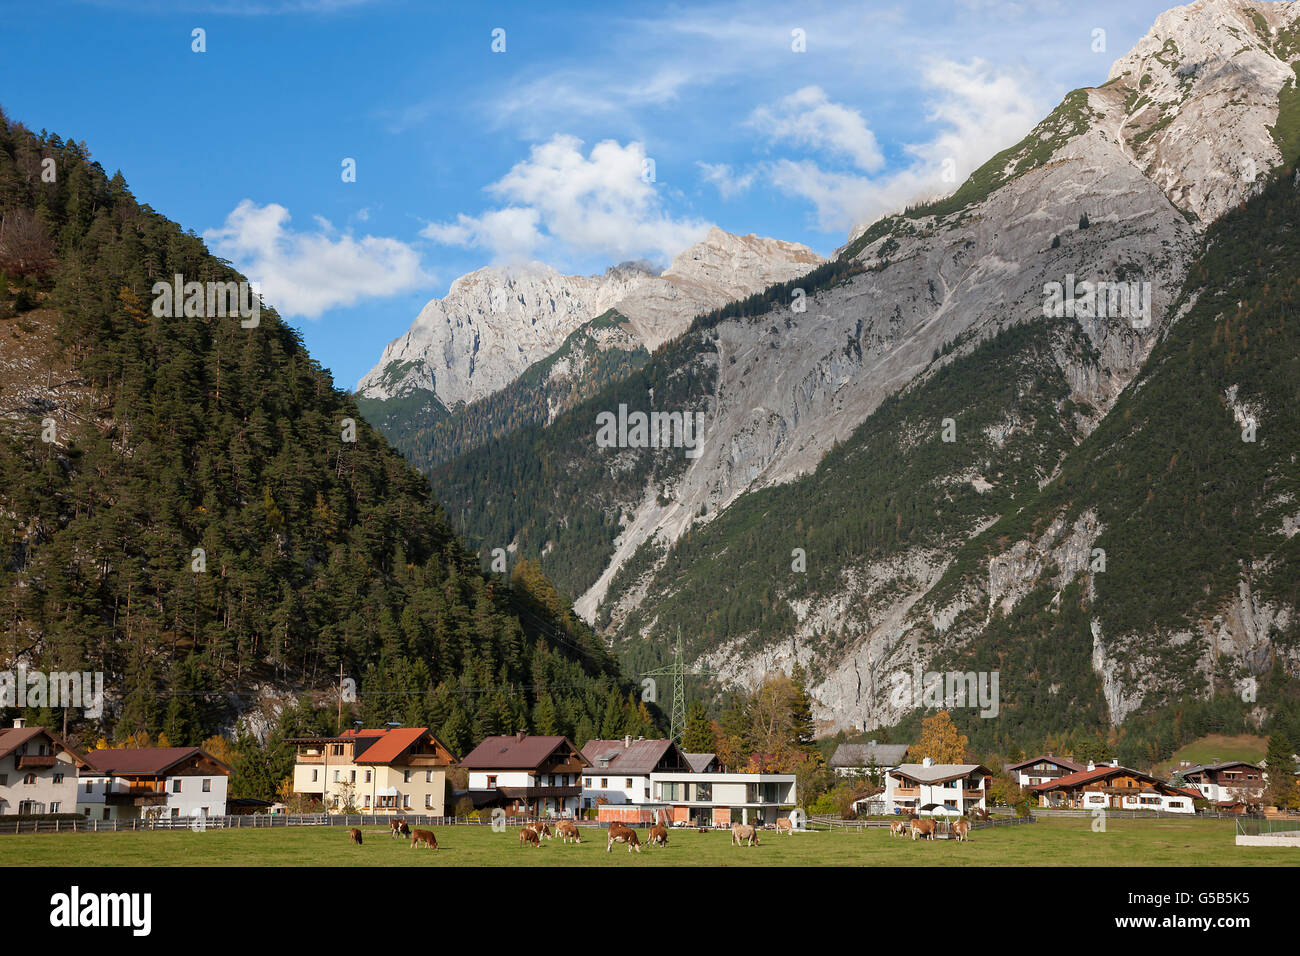 Alpes, village alpin dans la vallée, Allemagne Banque D'Images